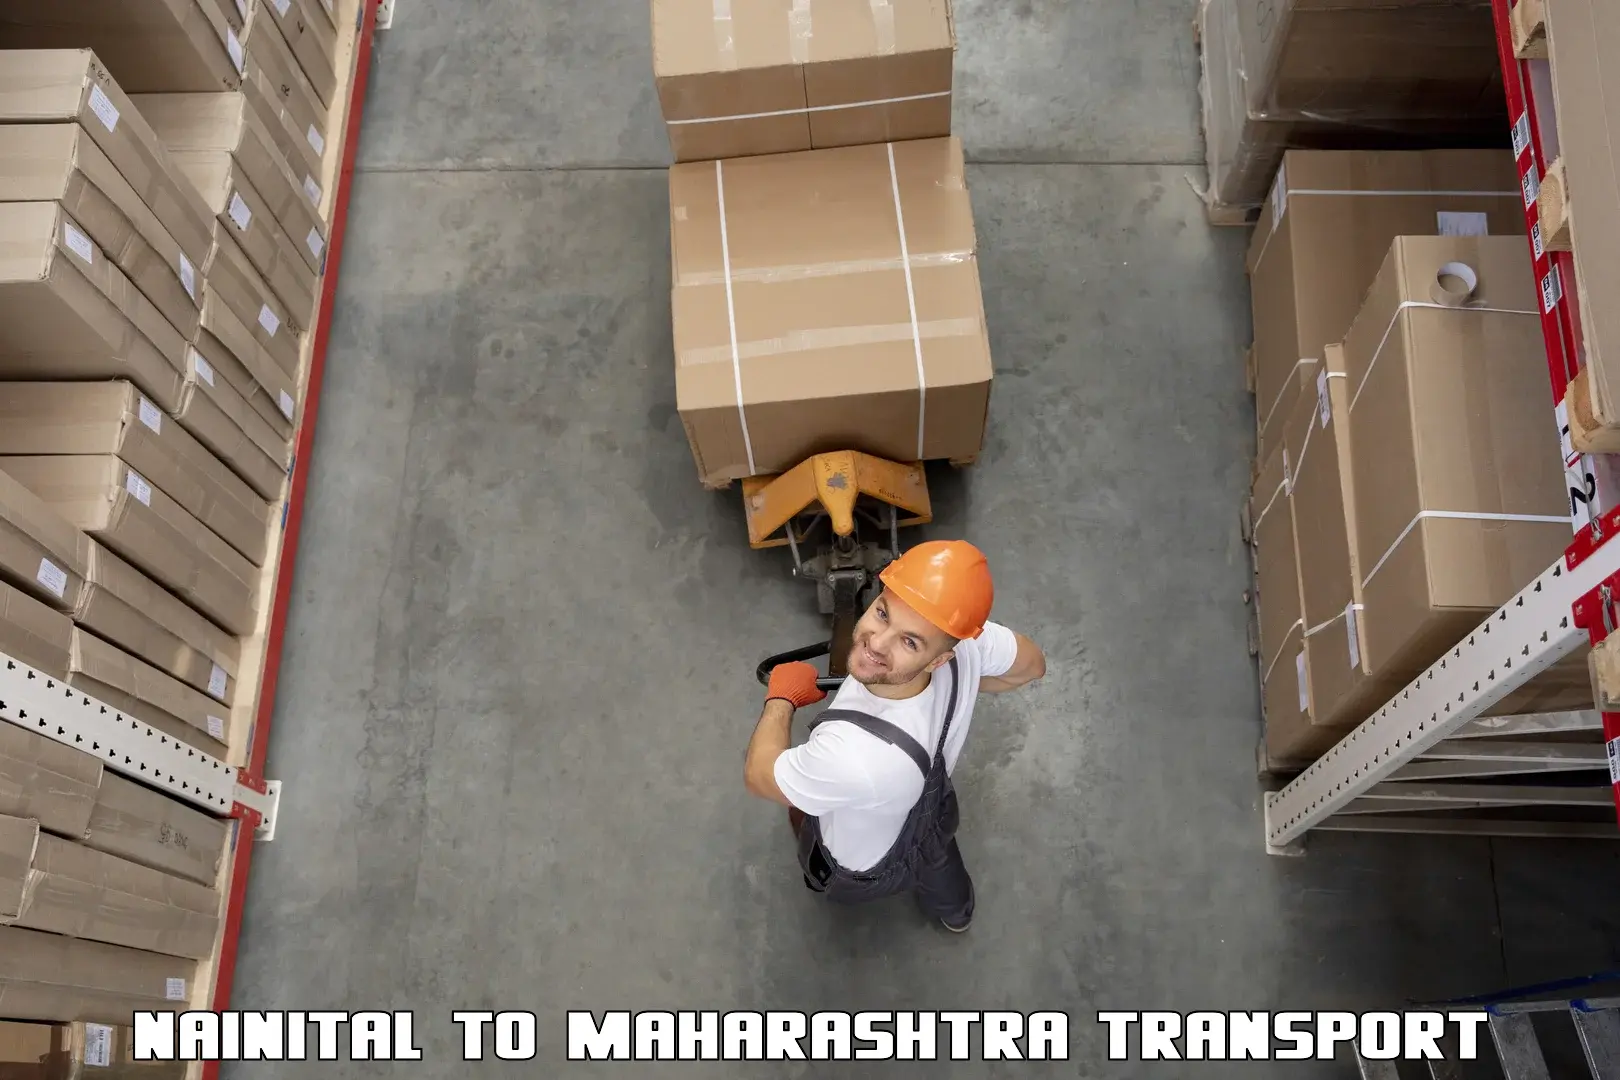 Cargo train transport services Nainital to Maharashtra